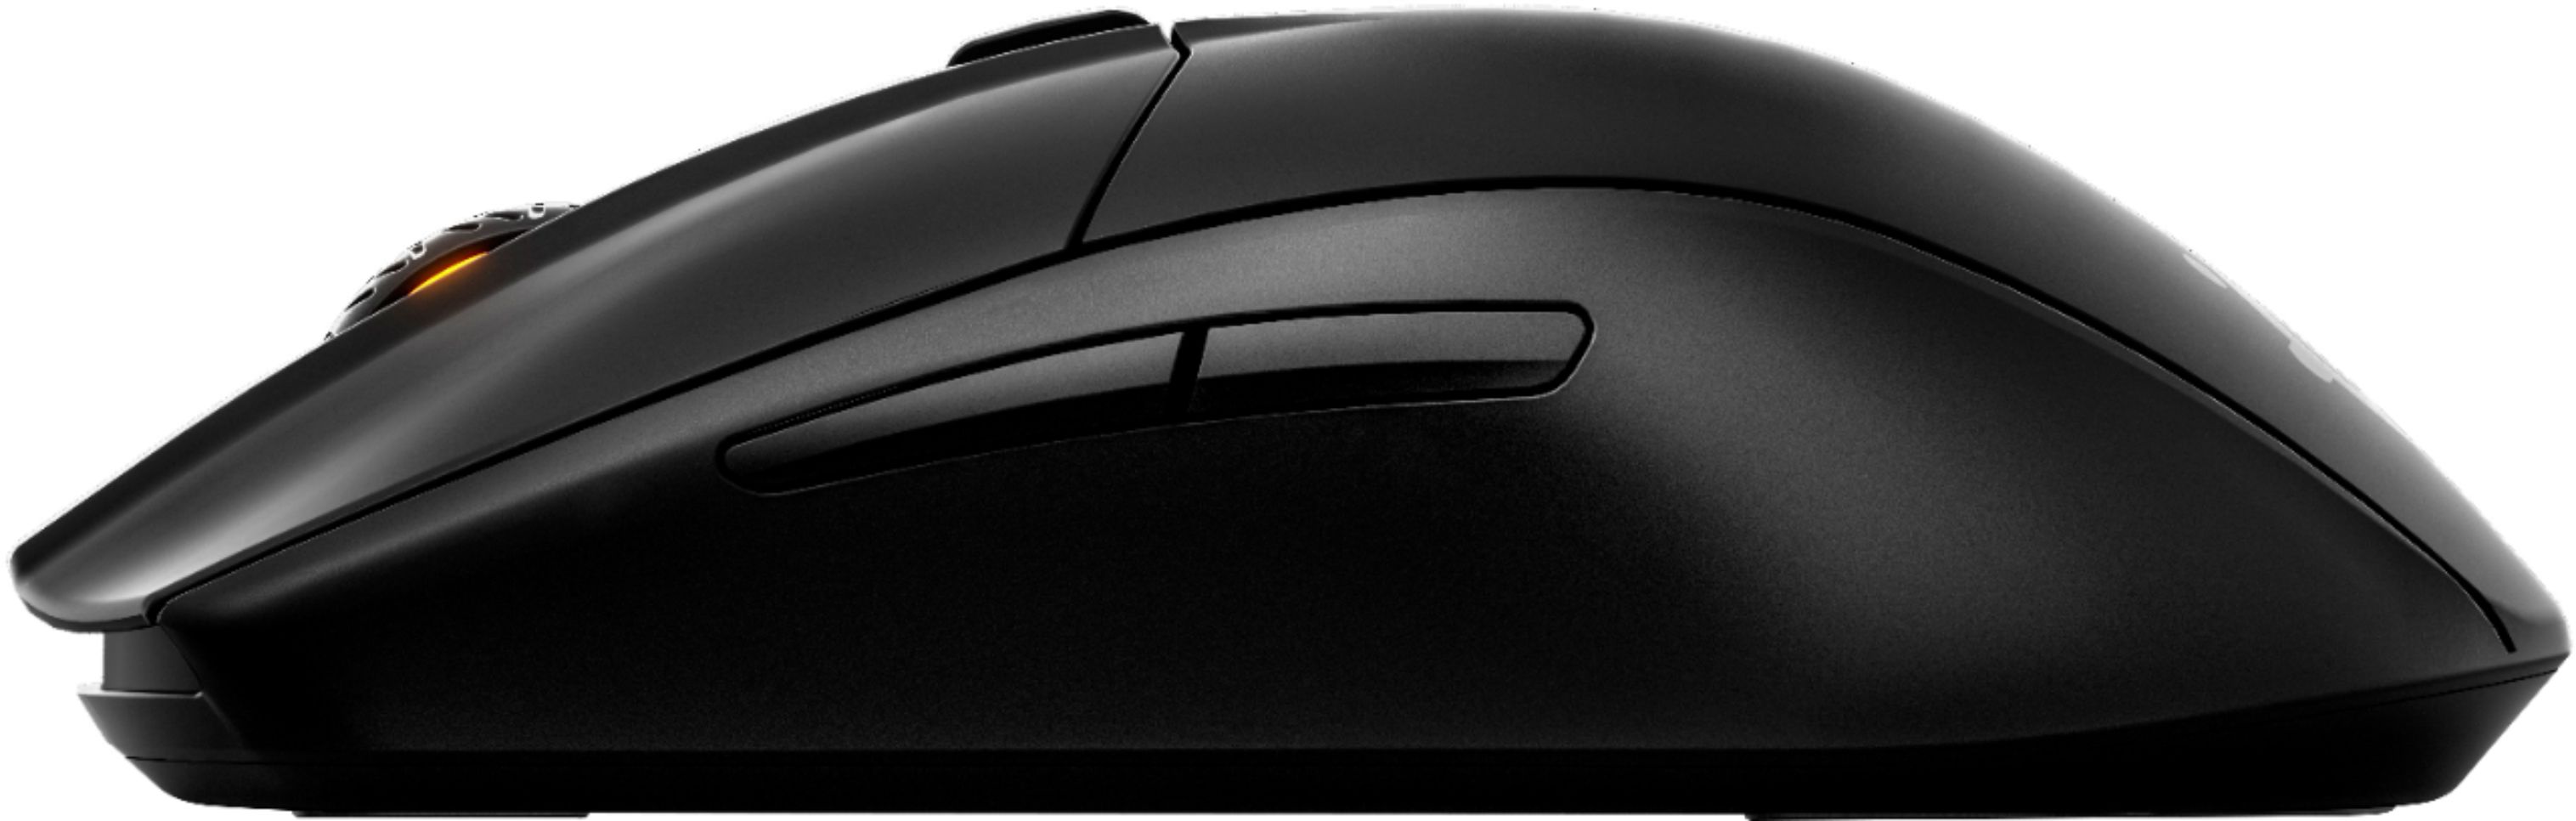 SteelSeries Rival 3 - Mouse - Optic - 6 knappar - Svart